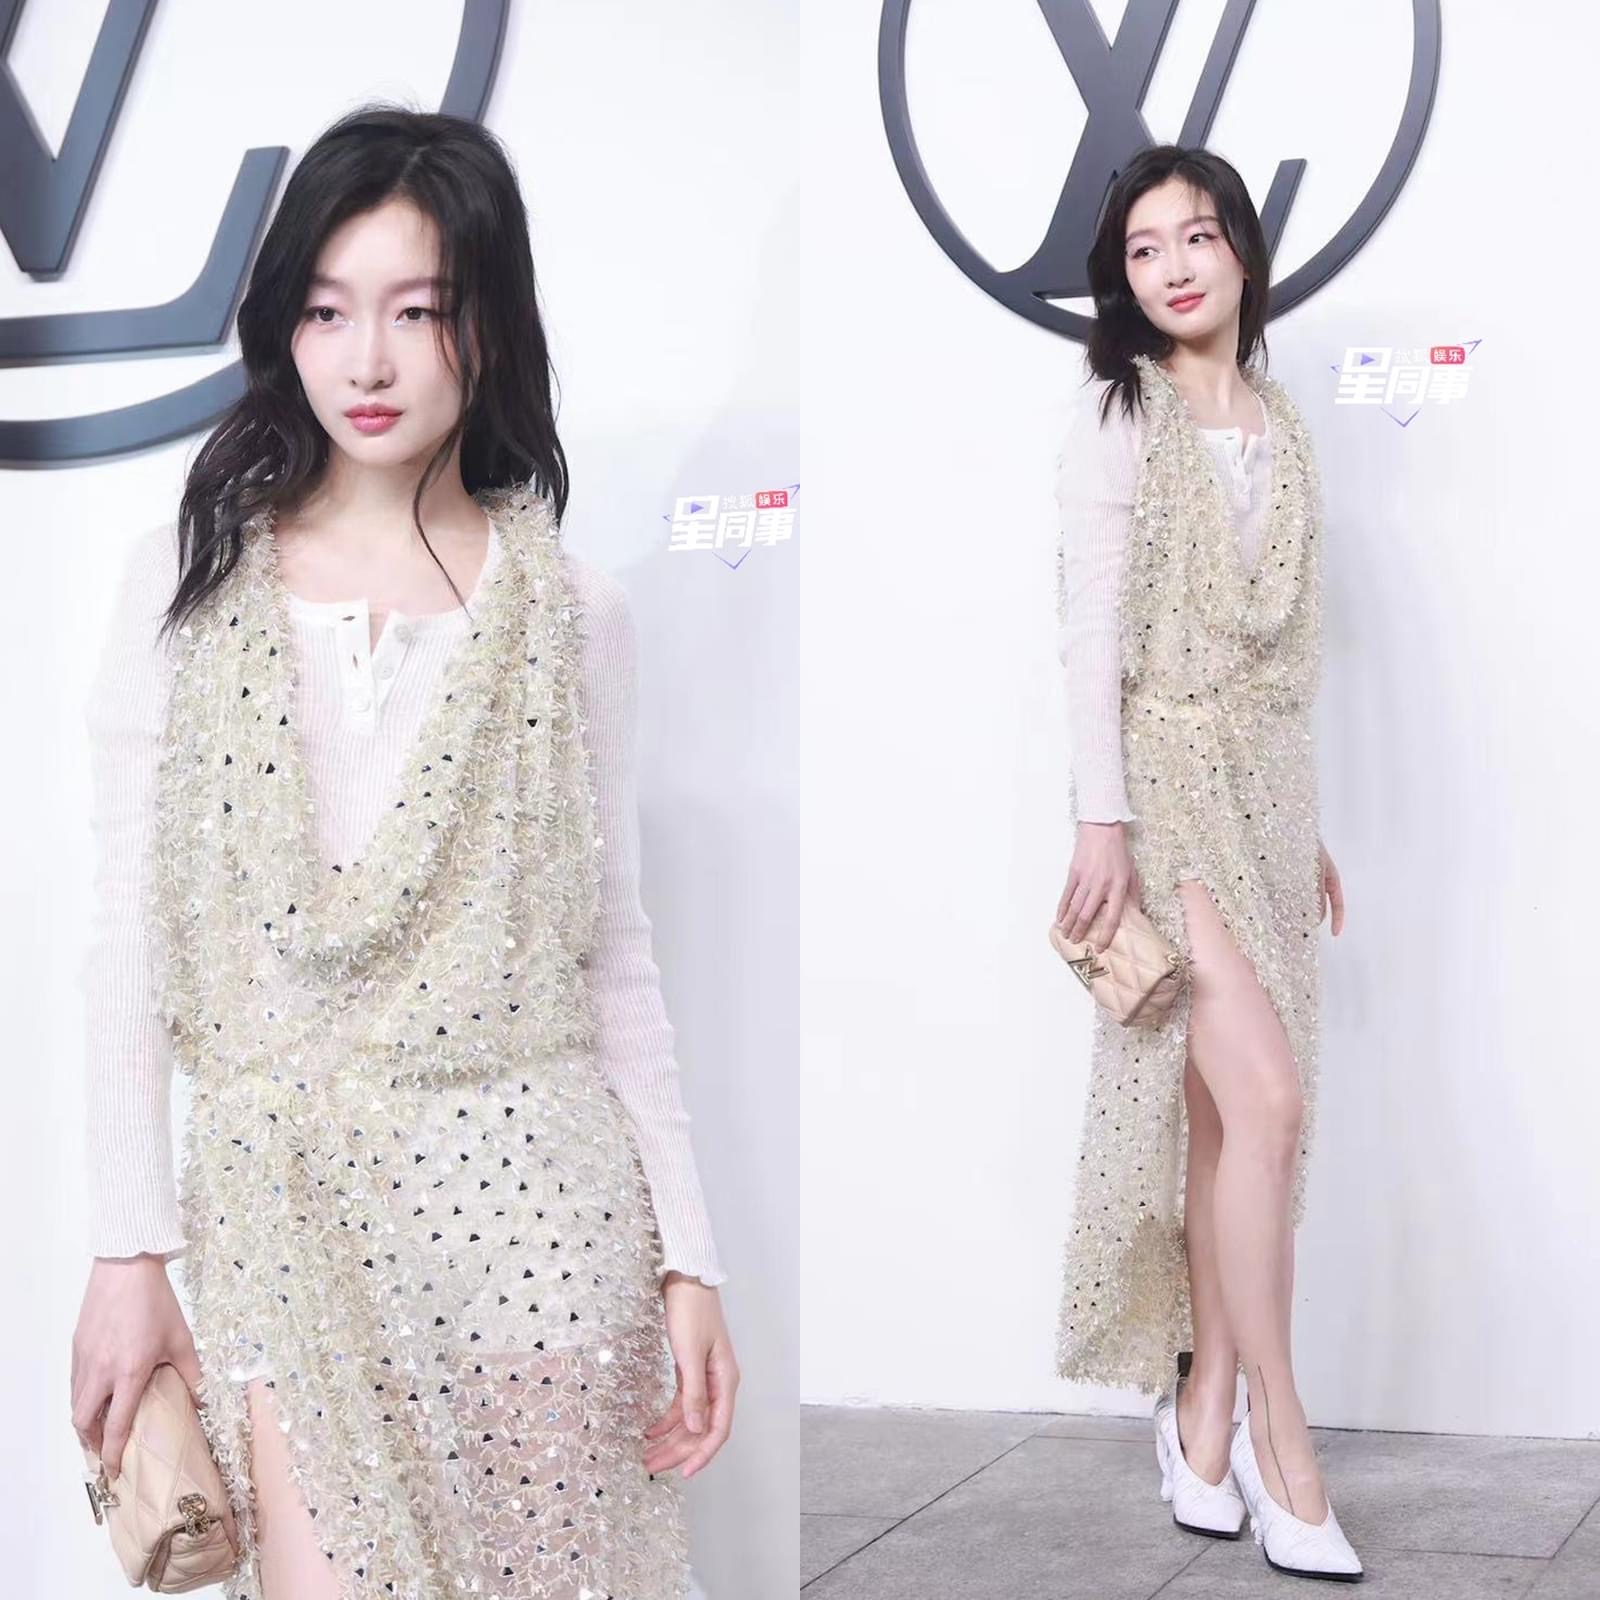 Lưu Diệc Phi diện váy dìm dáng, Châu Đông Vũ xuất hiện hậu lùm xùm bị tố chảnh choẹ tại show diễn thời trang - Ảnh 4.